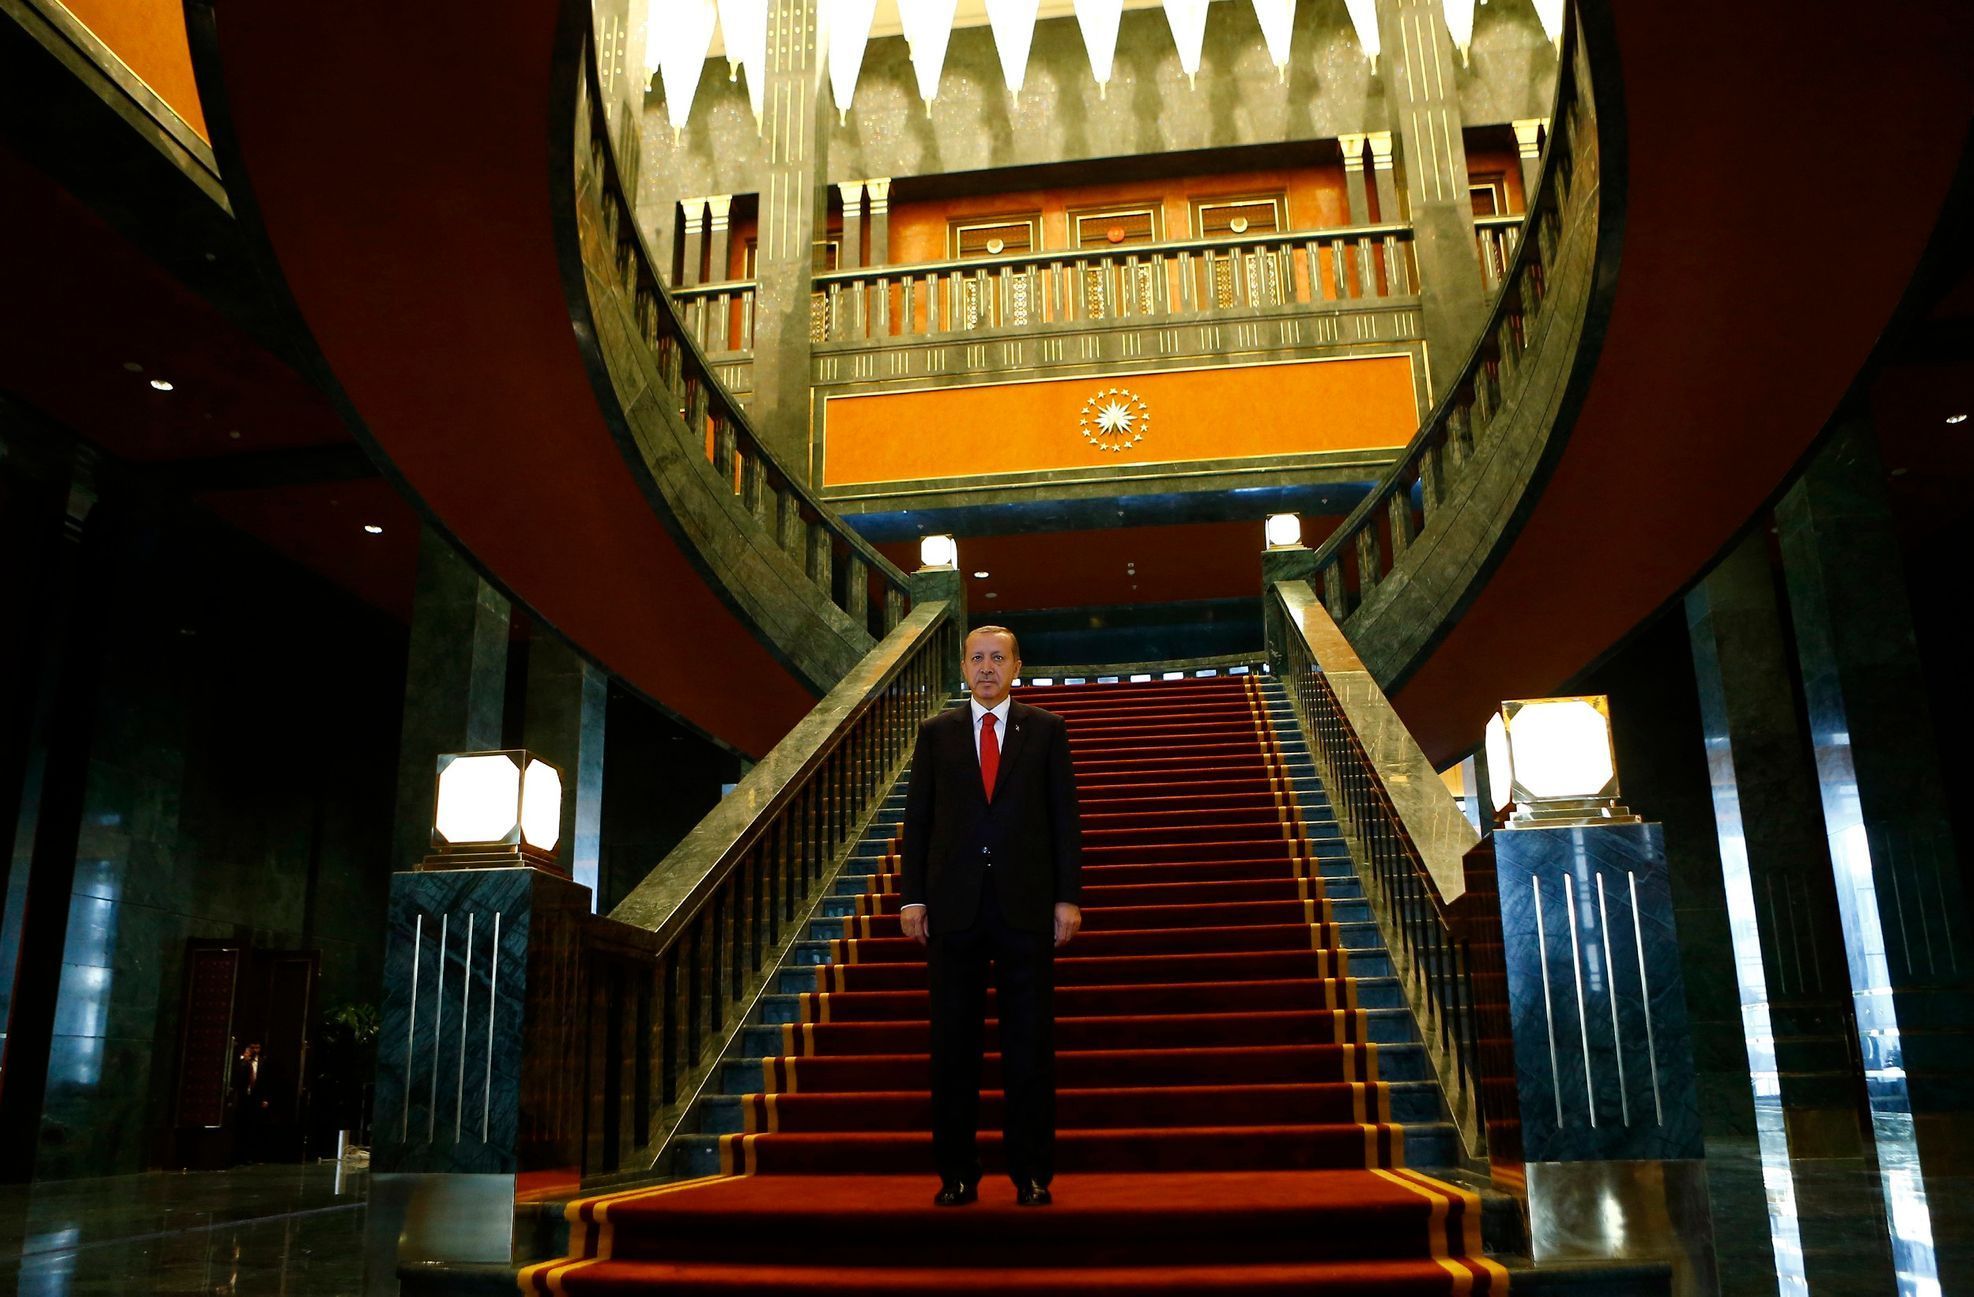 Turecký prezident ve svém novém paláci